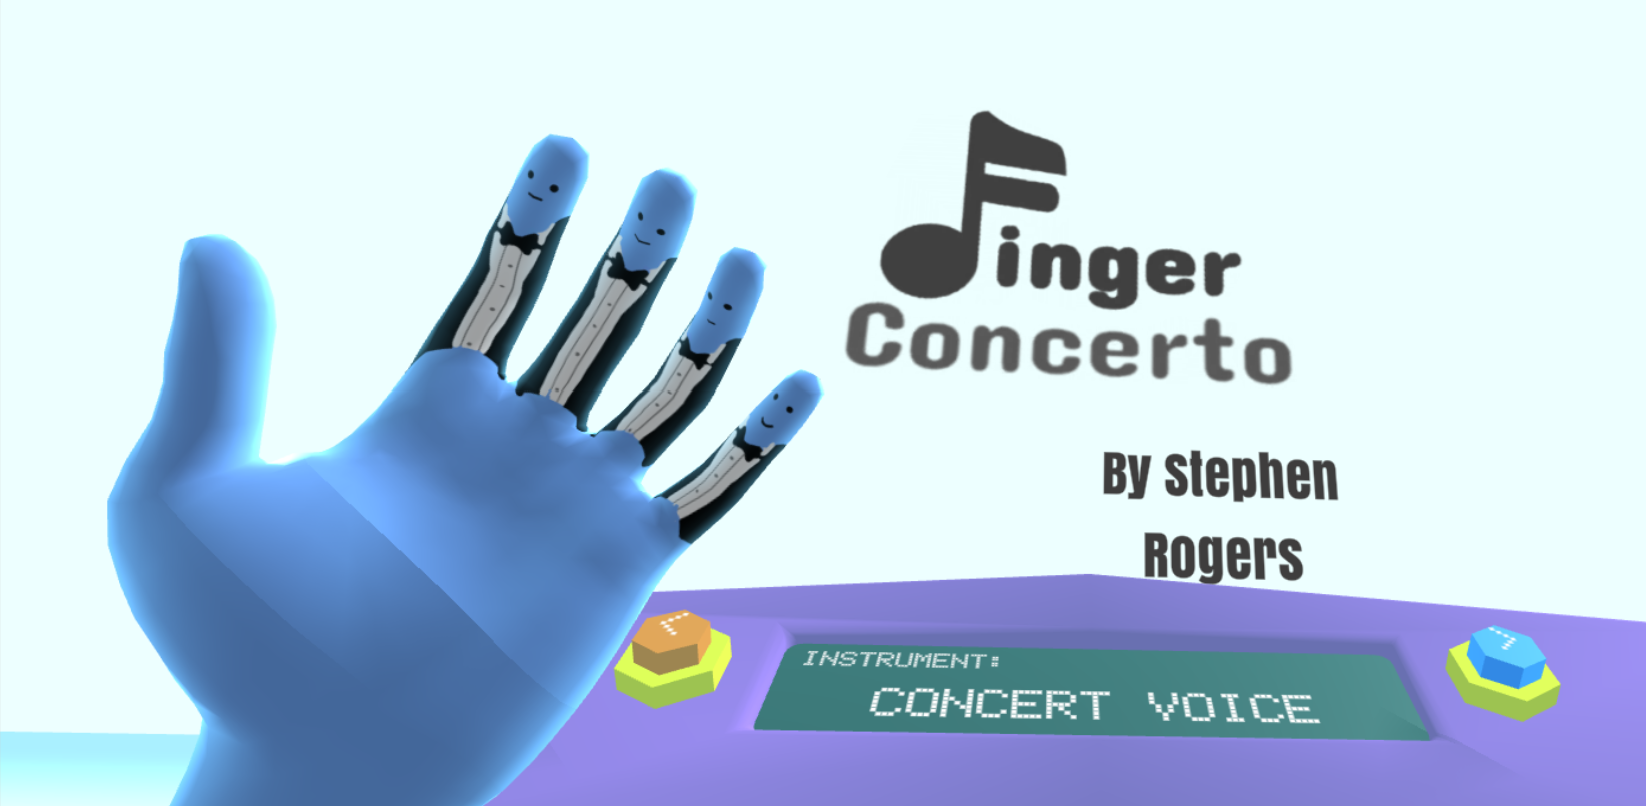 Finger Concerto